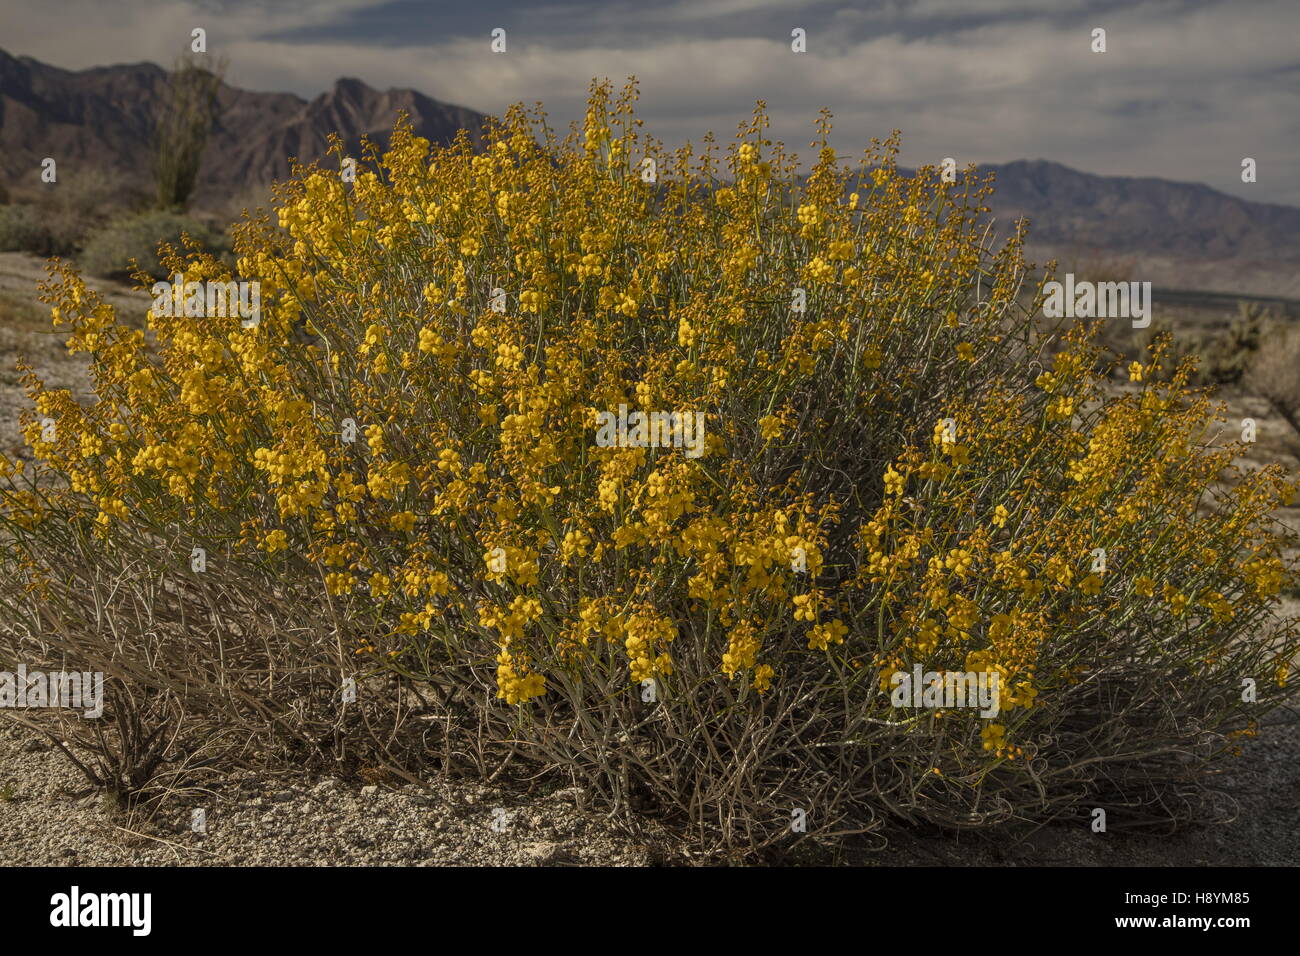 Senna, Senna armata du désert, en fleurs dans le désert californien. Anza-Borrego Desert State Park, désert de Sonora, en Californie. Banque D'Images